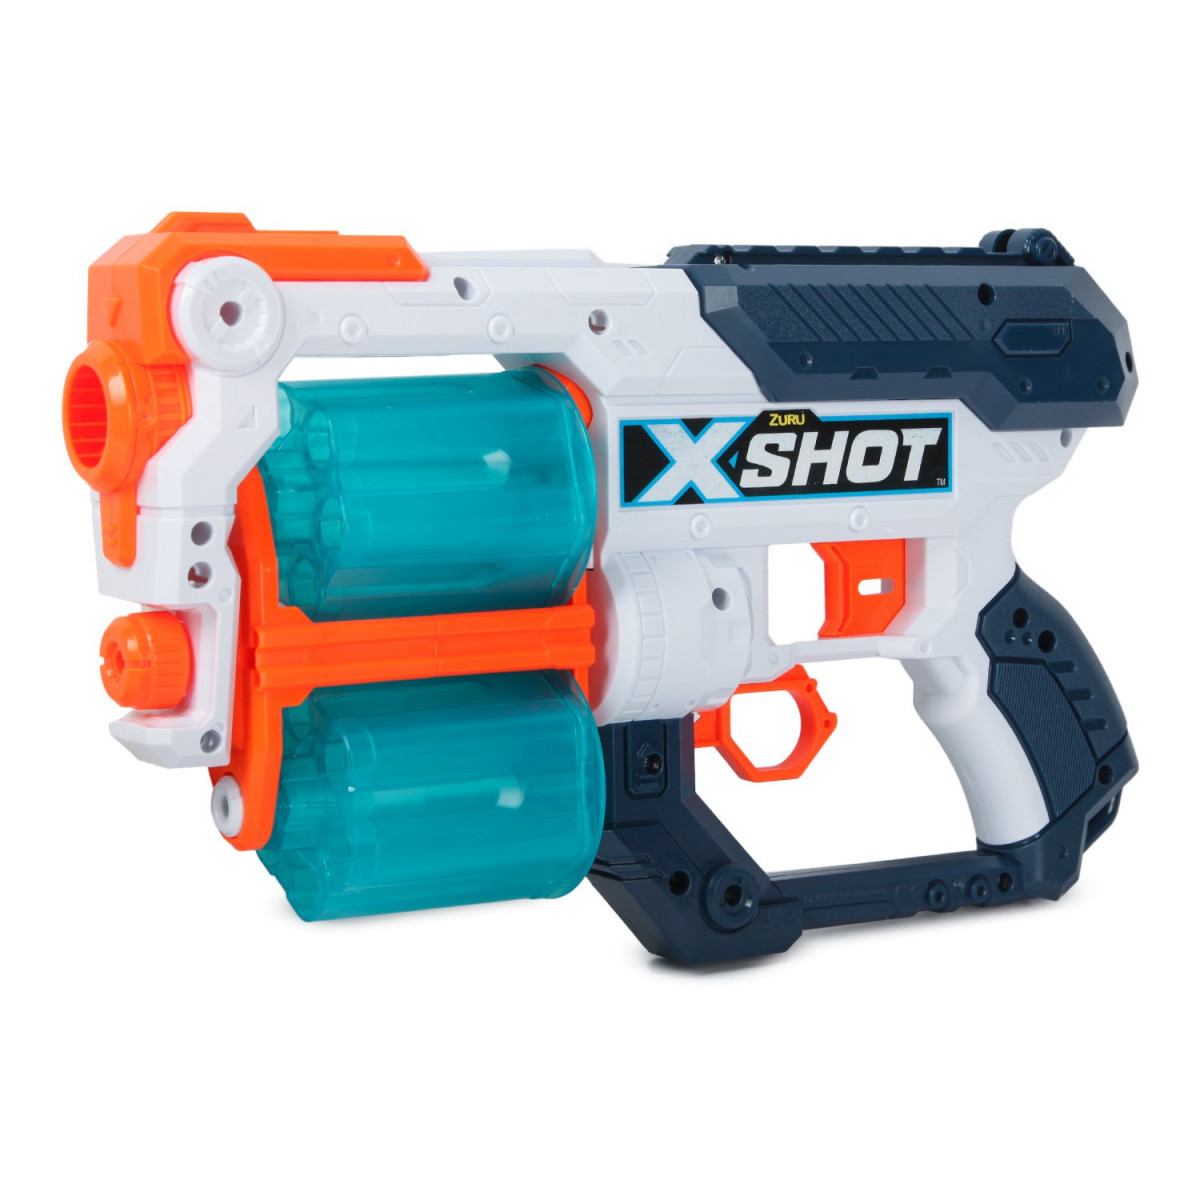 Набор X-SHOT  Turbo Combo Fire 36421